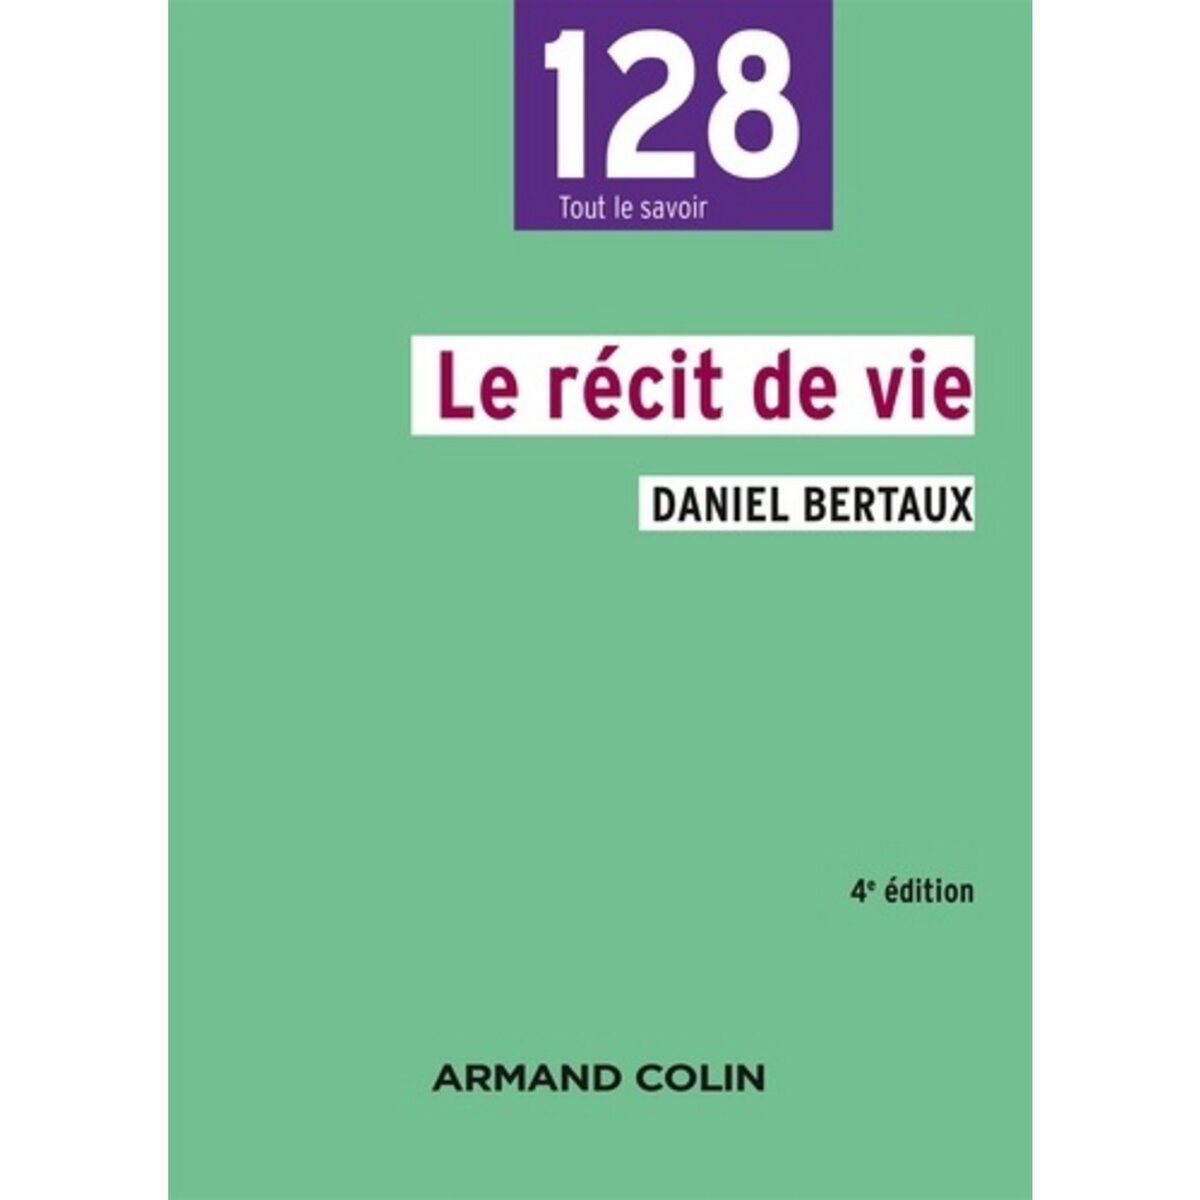  LE RECIT DE VIE. 4E EDITION, Bertaux Daniel